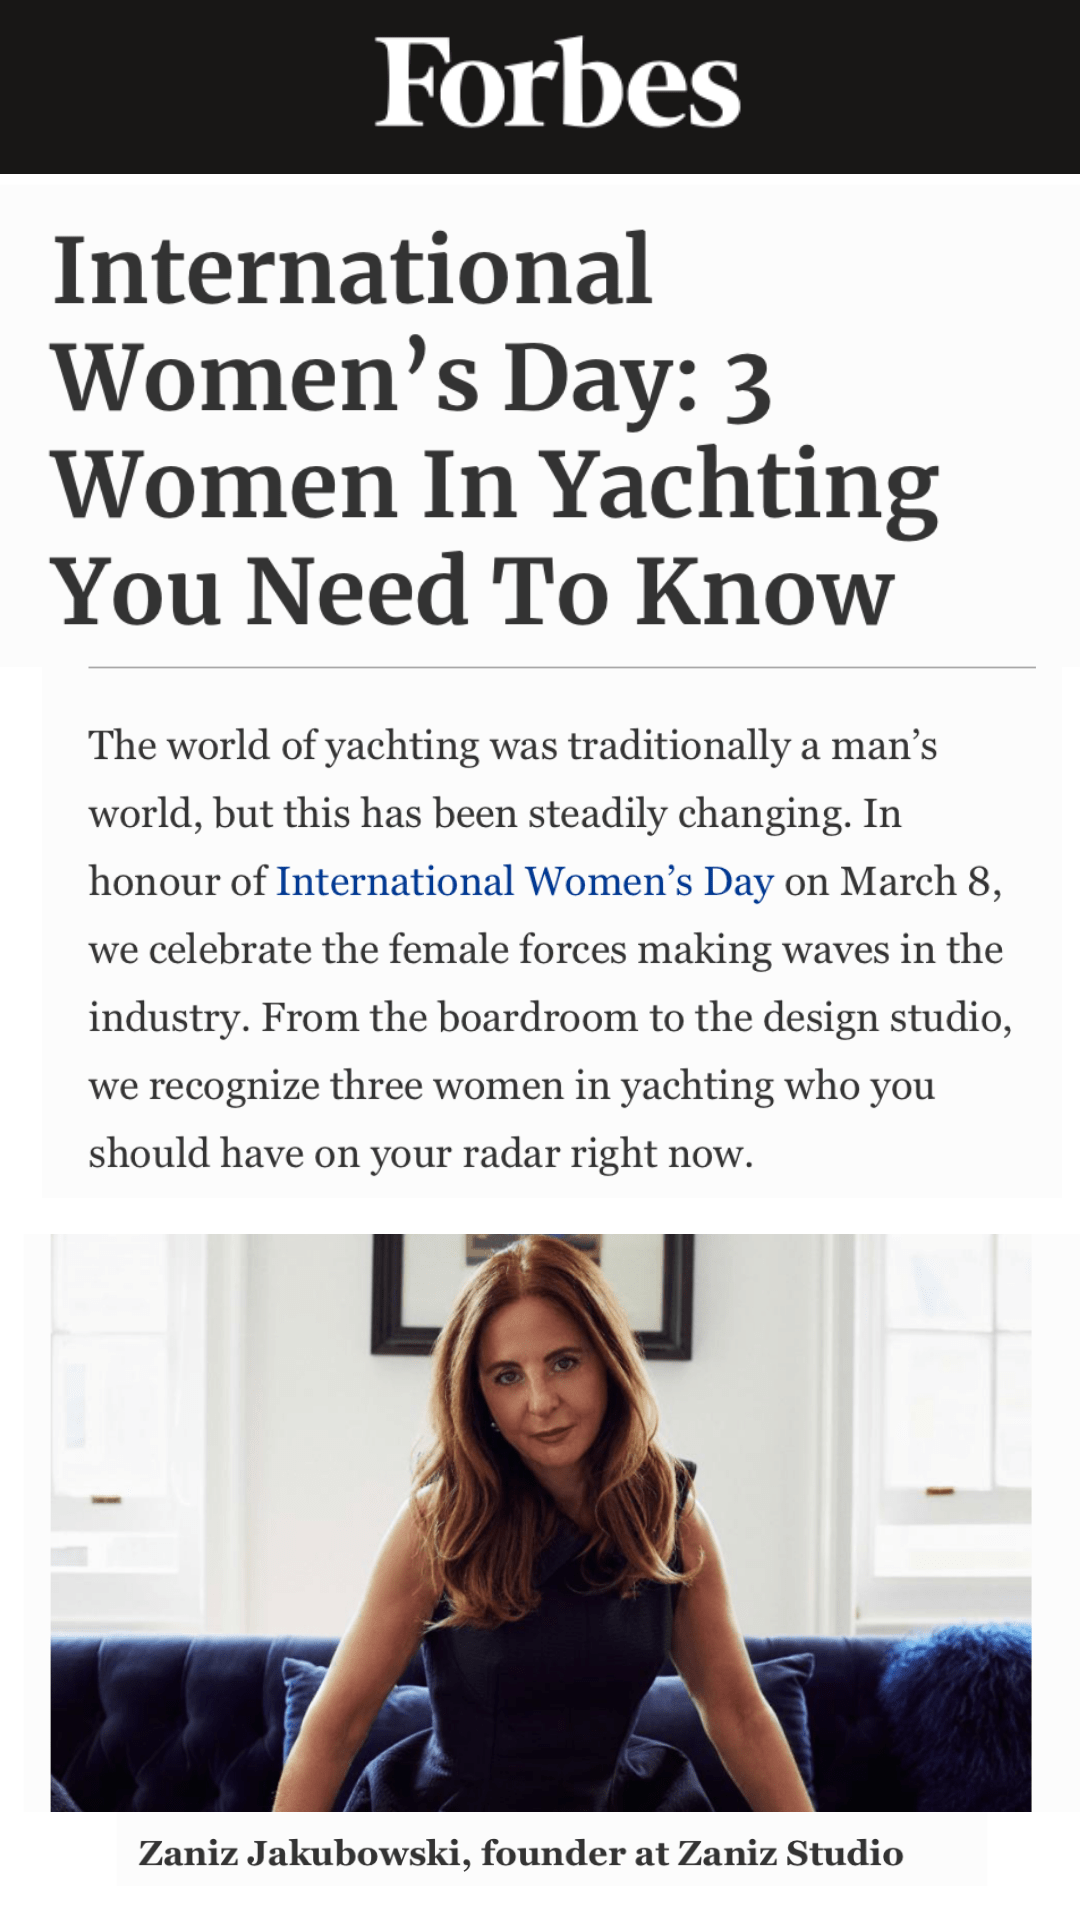 International women's day. zaniz jakubowski is one of the women in yachting you need to know